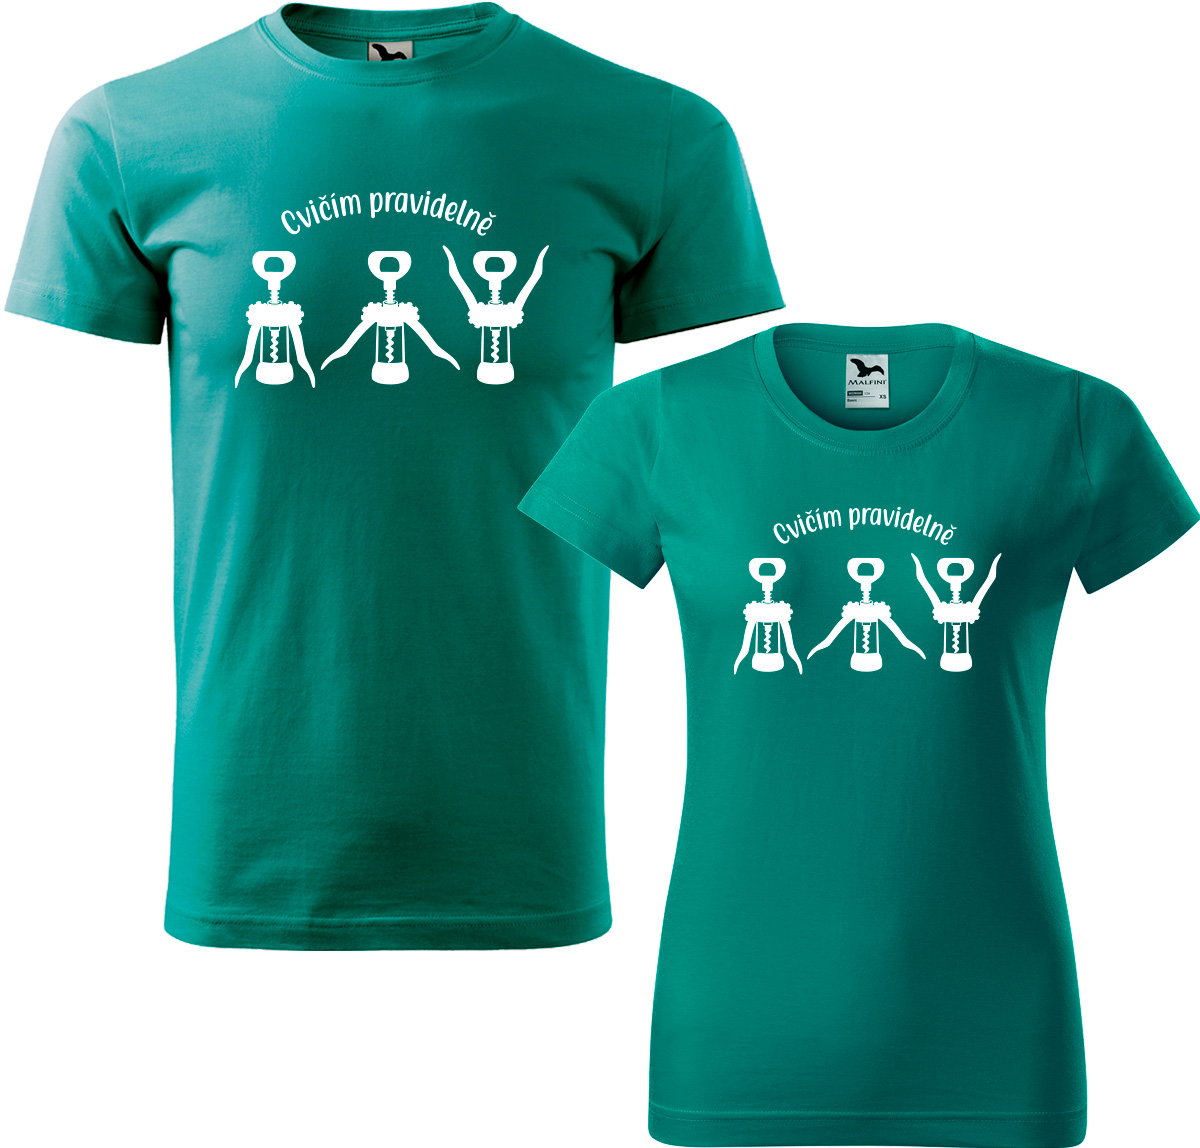 Trička pro páry - Cvičím pravidelně Barva: Emerald (19), Velikost dámské tričko: S, Velikost pánské tričko: S